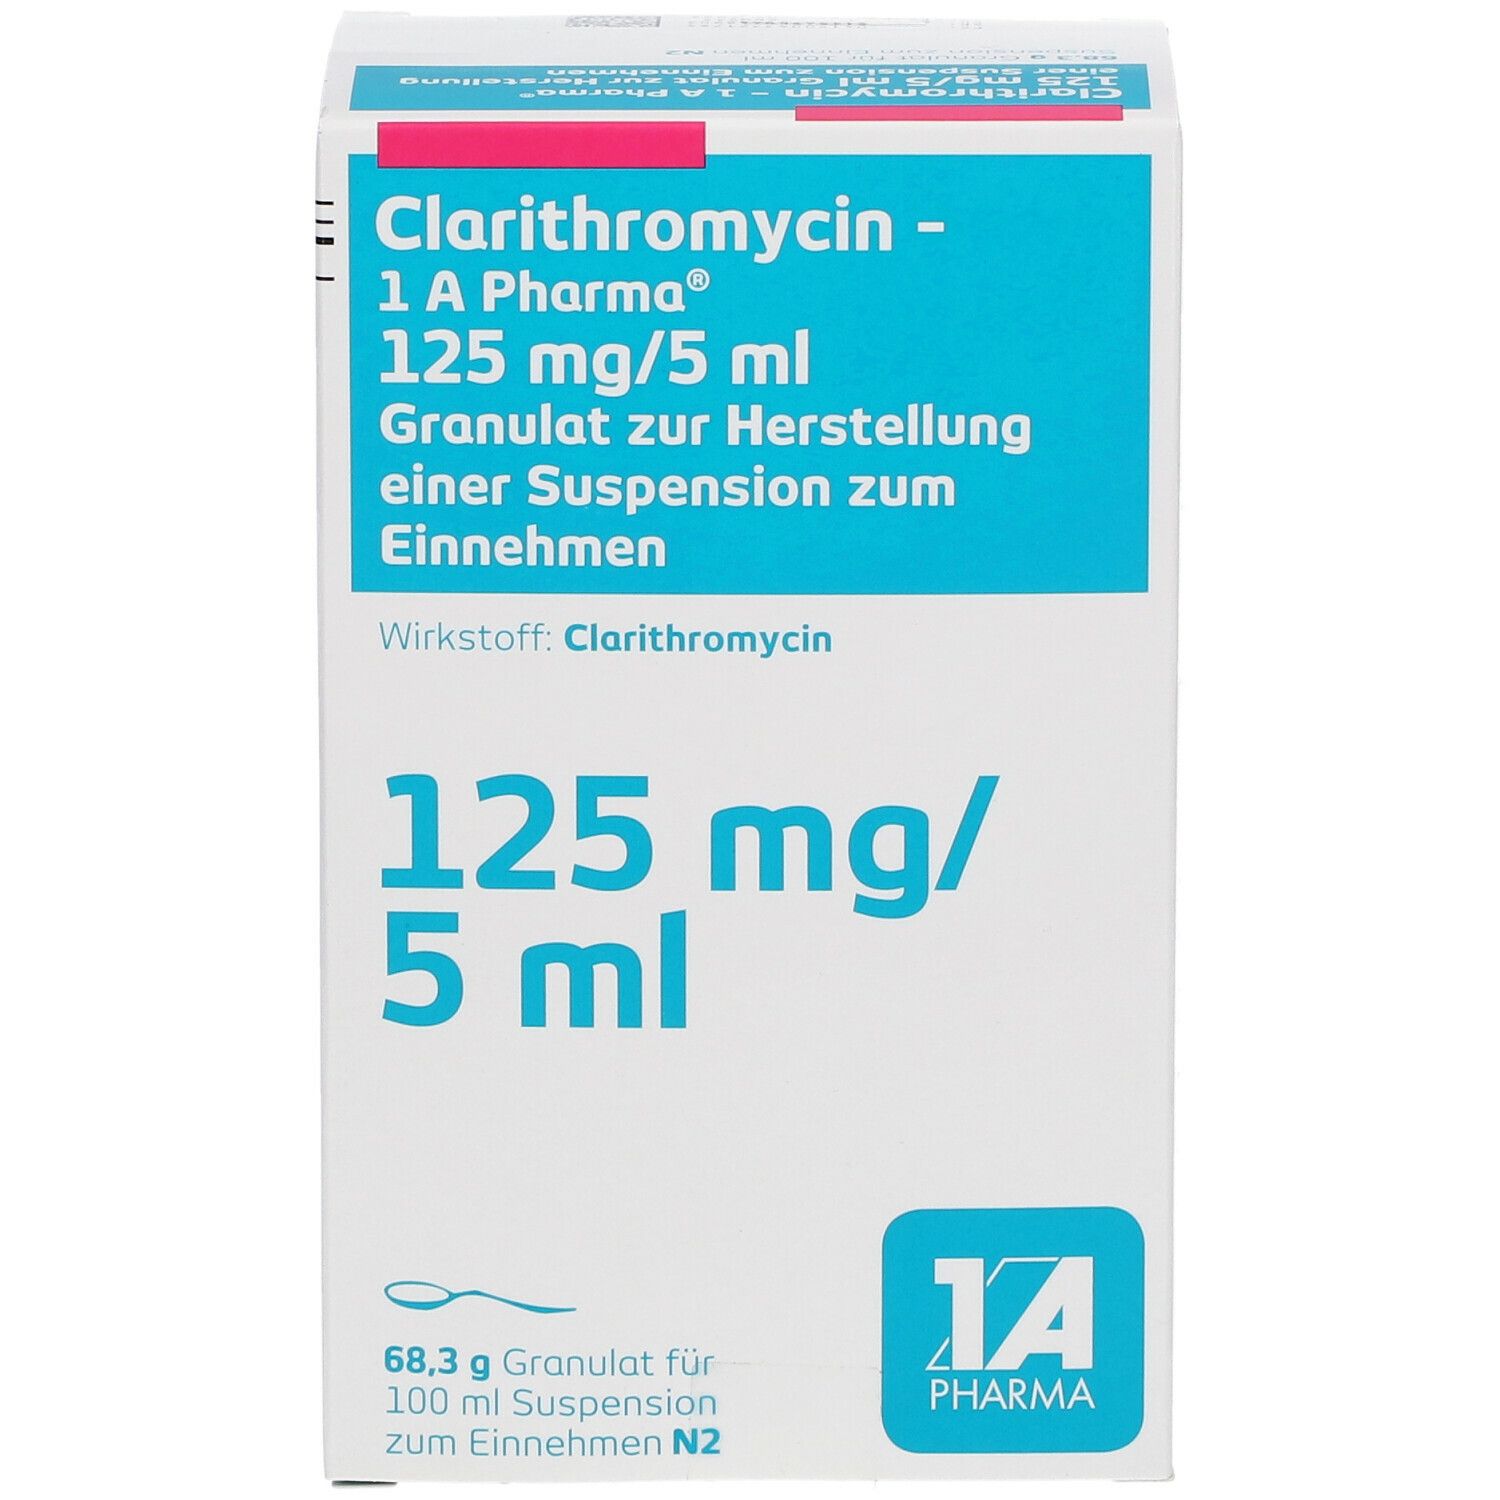 Clarithromycin - 1 A Pharma® 125 mg/5 ml